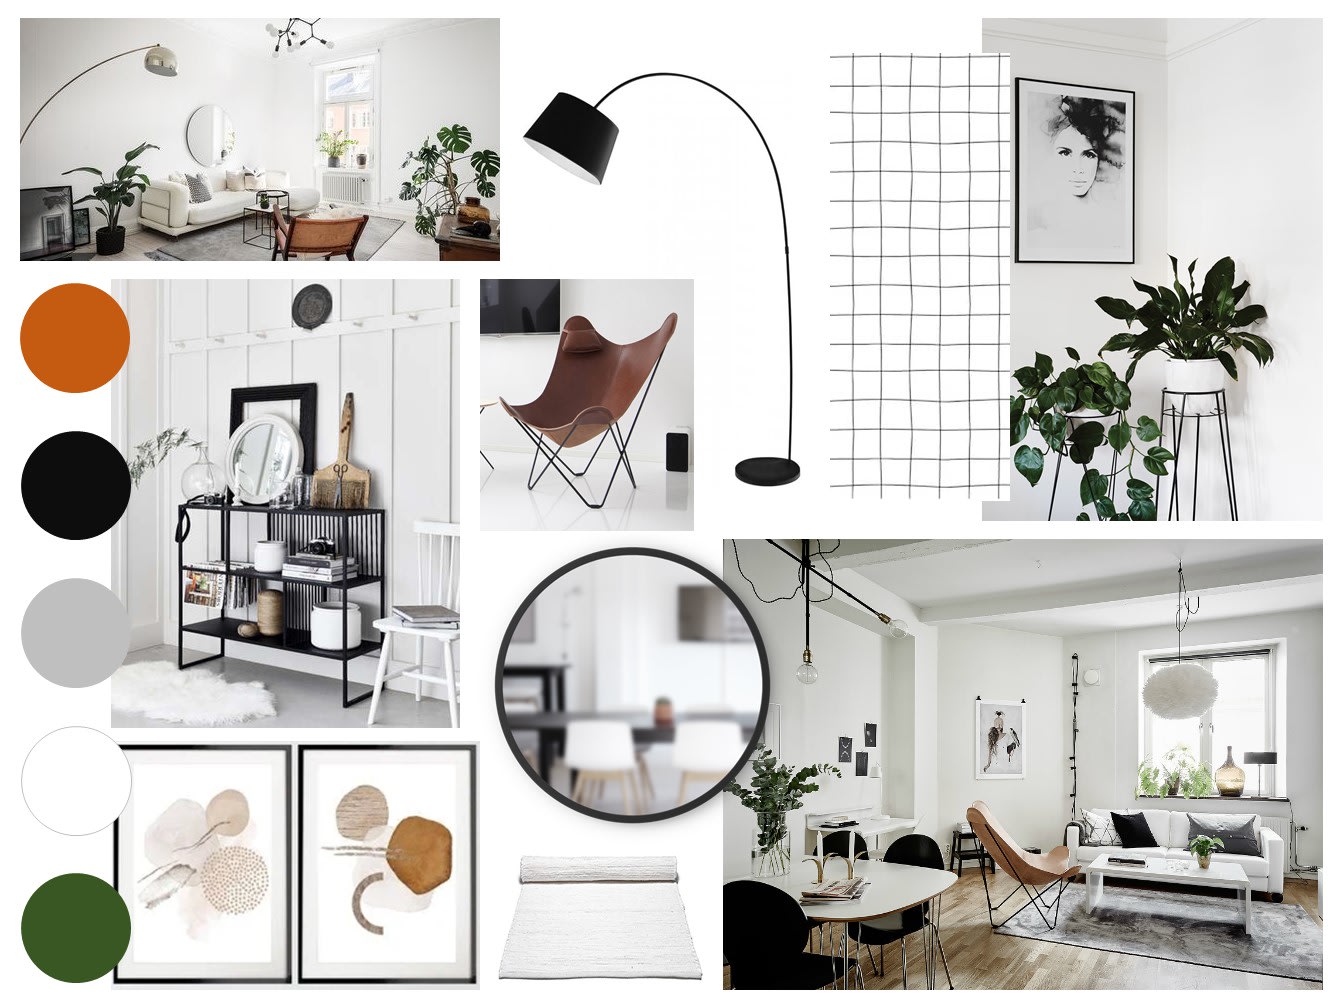 Manto Gruñido taburete Create interior design mood boards by Chloelarge | Fiverr